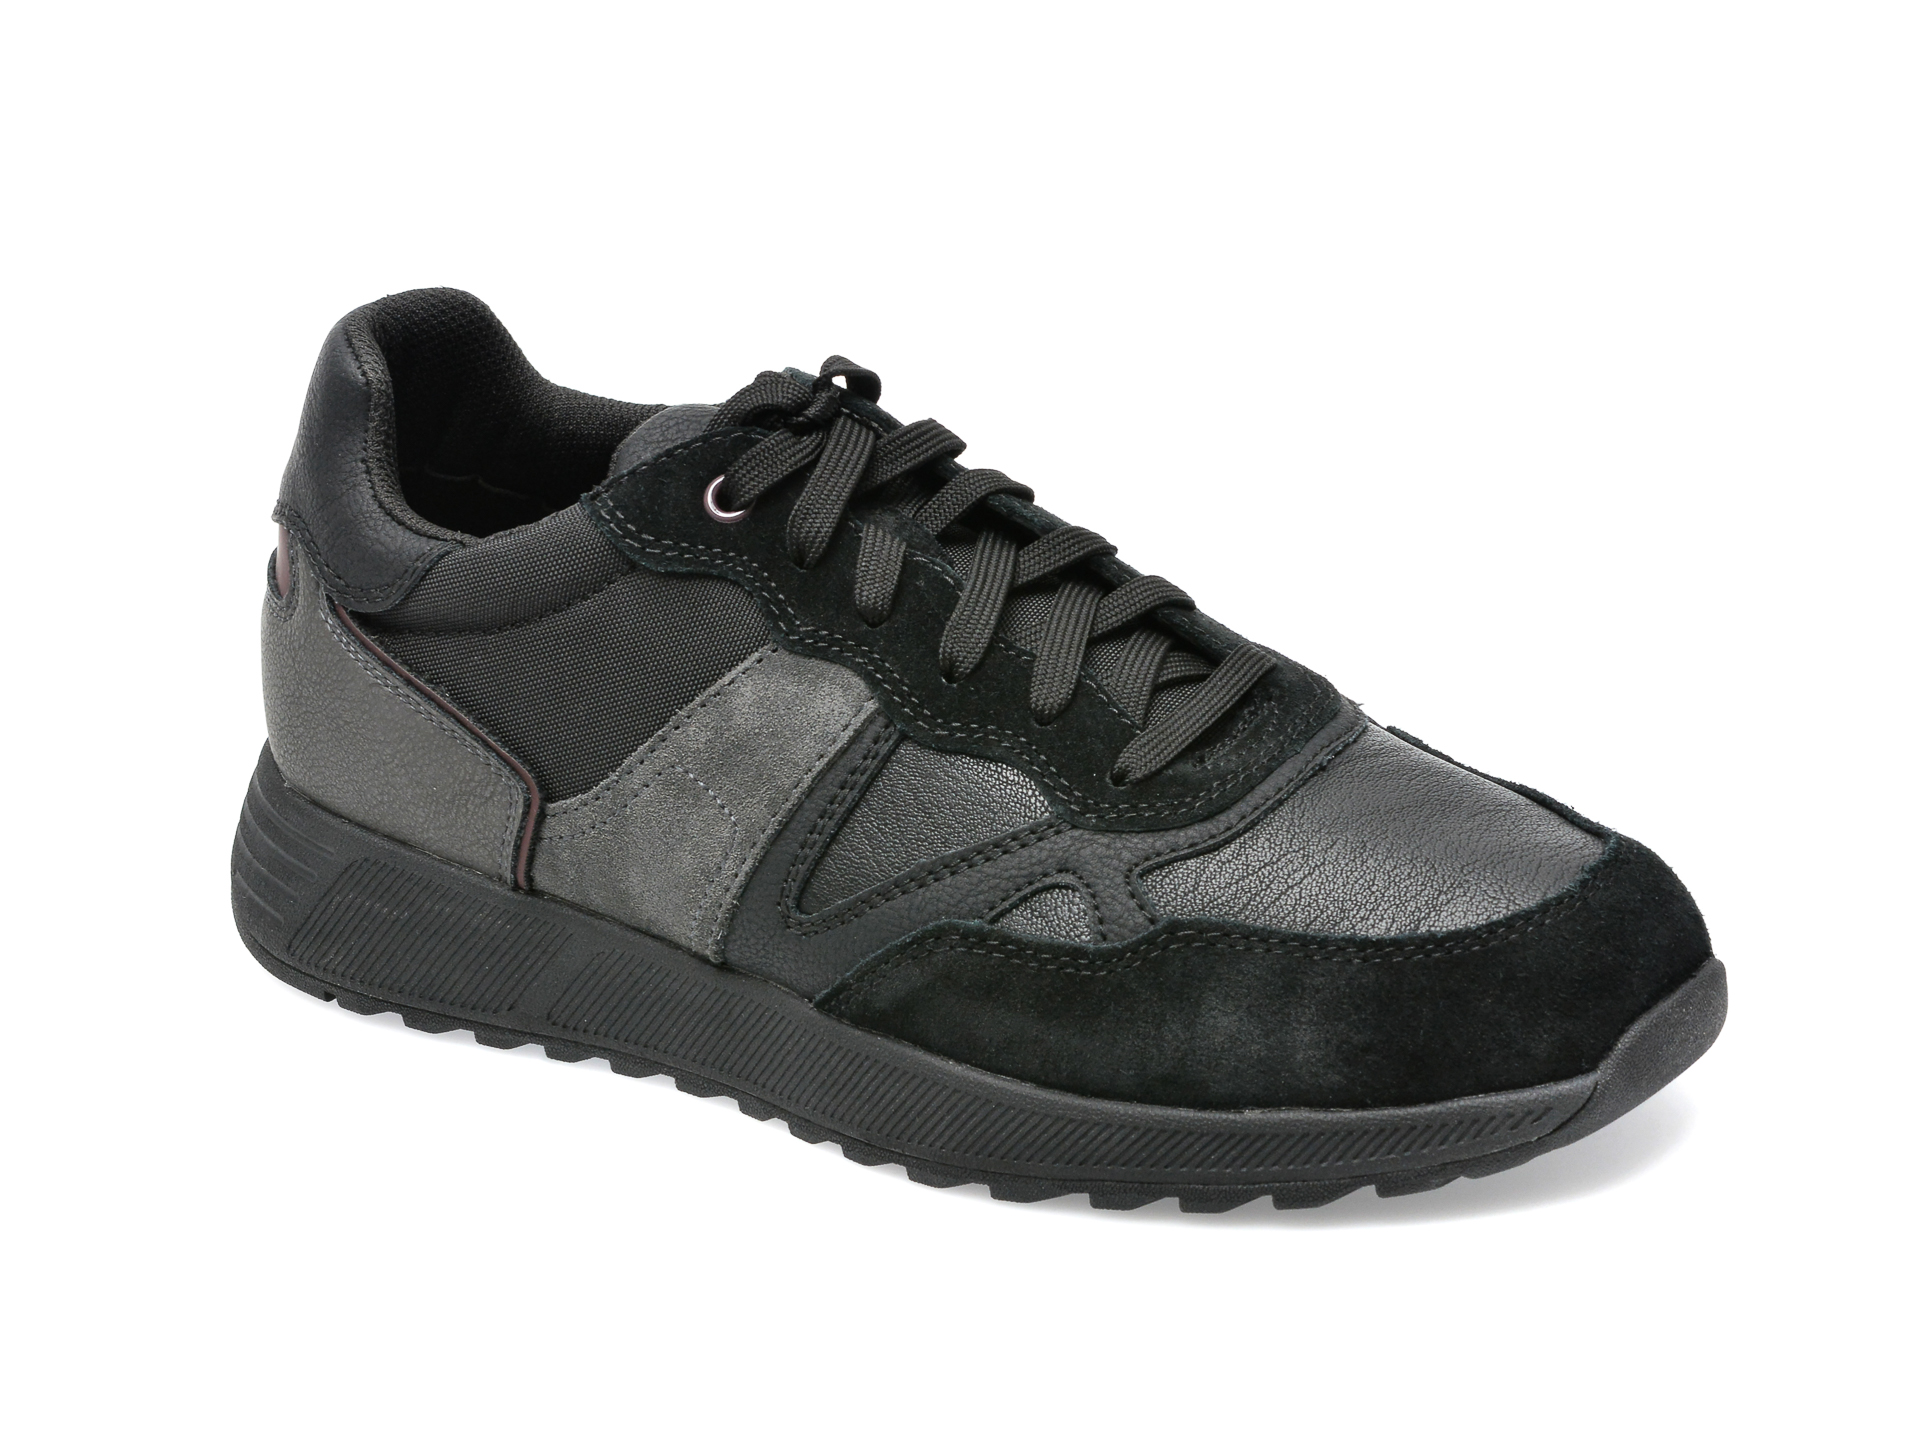 Pantofi sport GEOX negri, U26F1A, din piele naturala barbati 2023-03-24